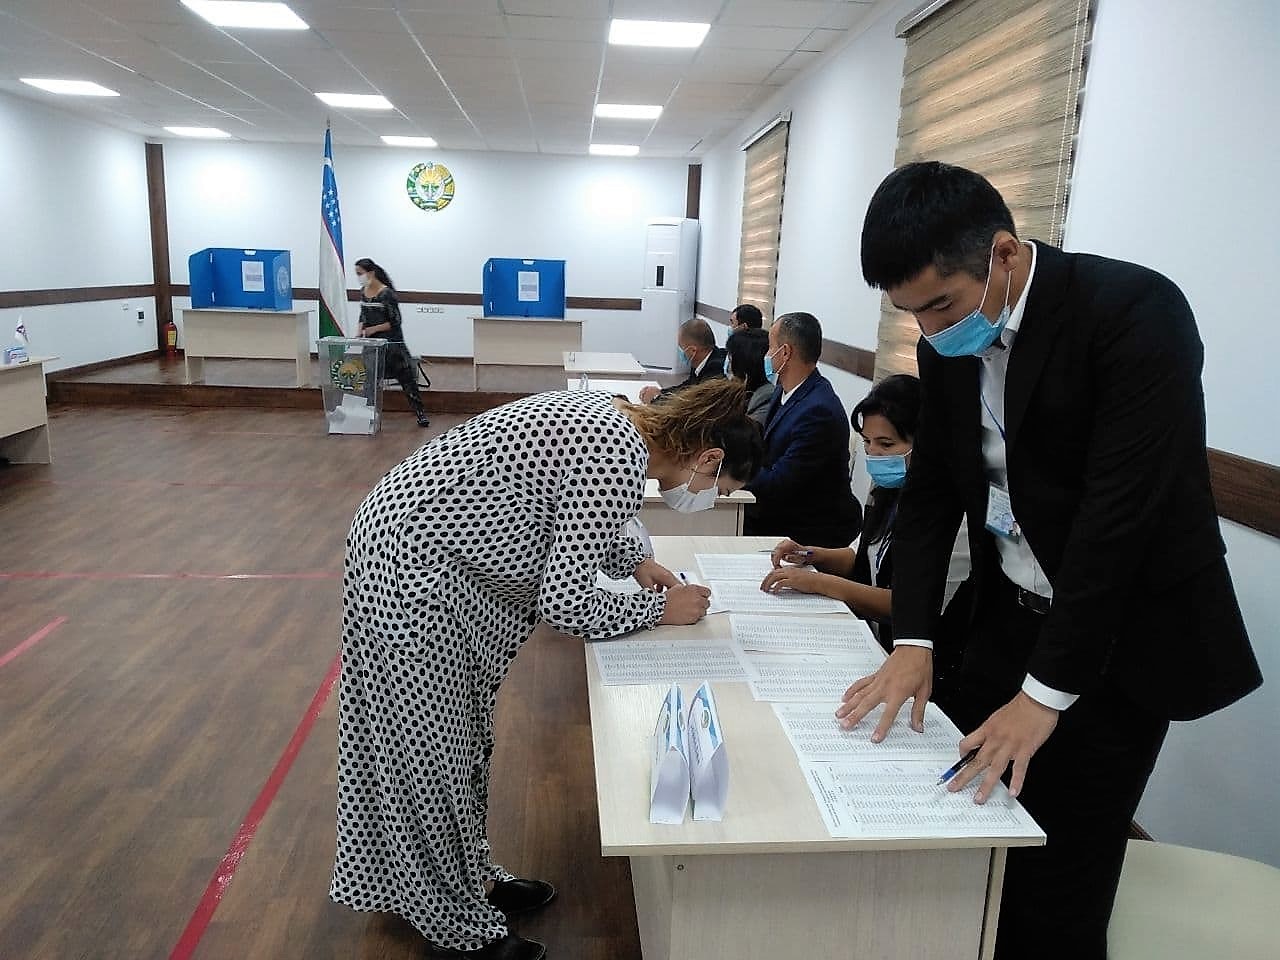 Представитель Уполномоченного по правам человека в Сурхандарье изучил деятельность избирательных участков в пенитенциарных учреждениях